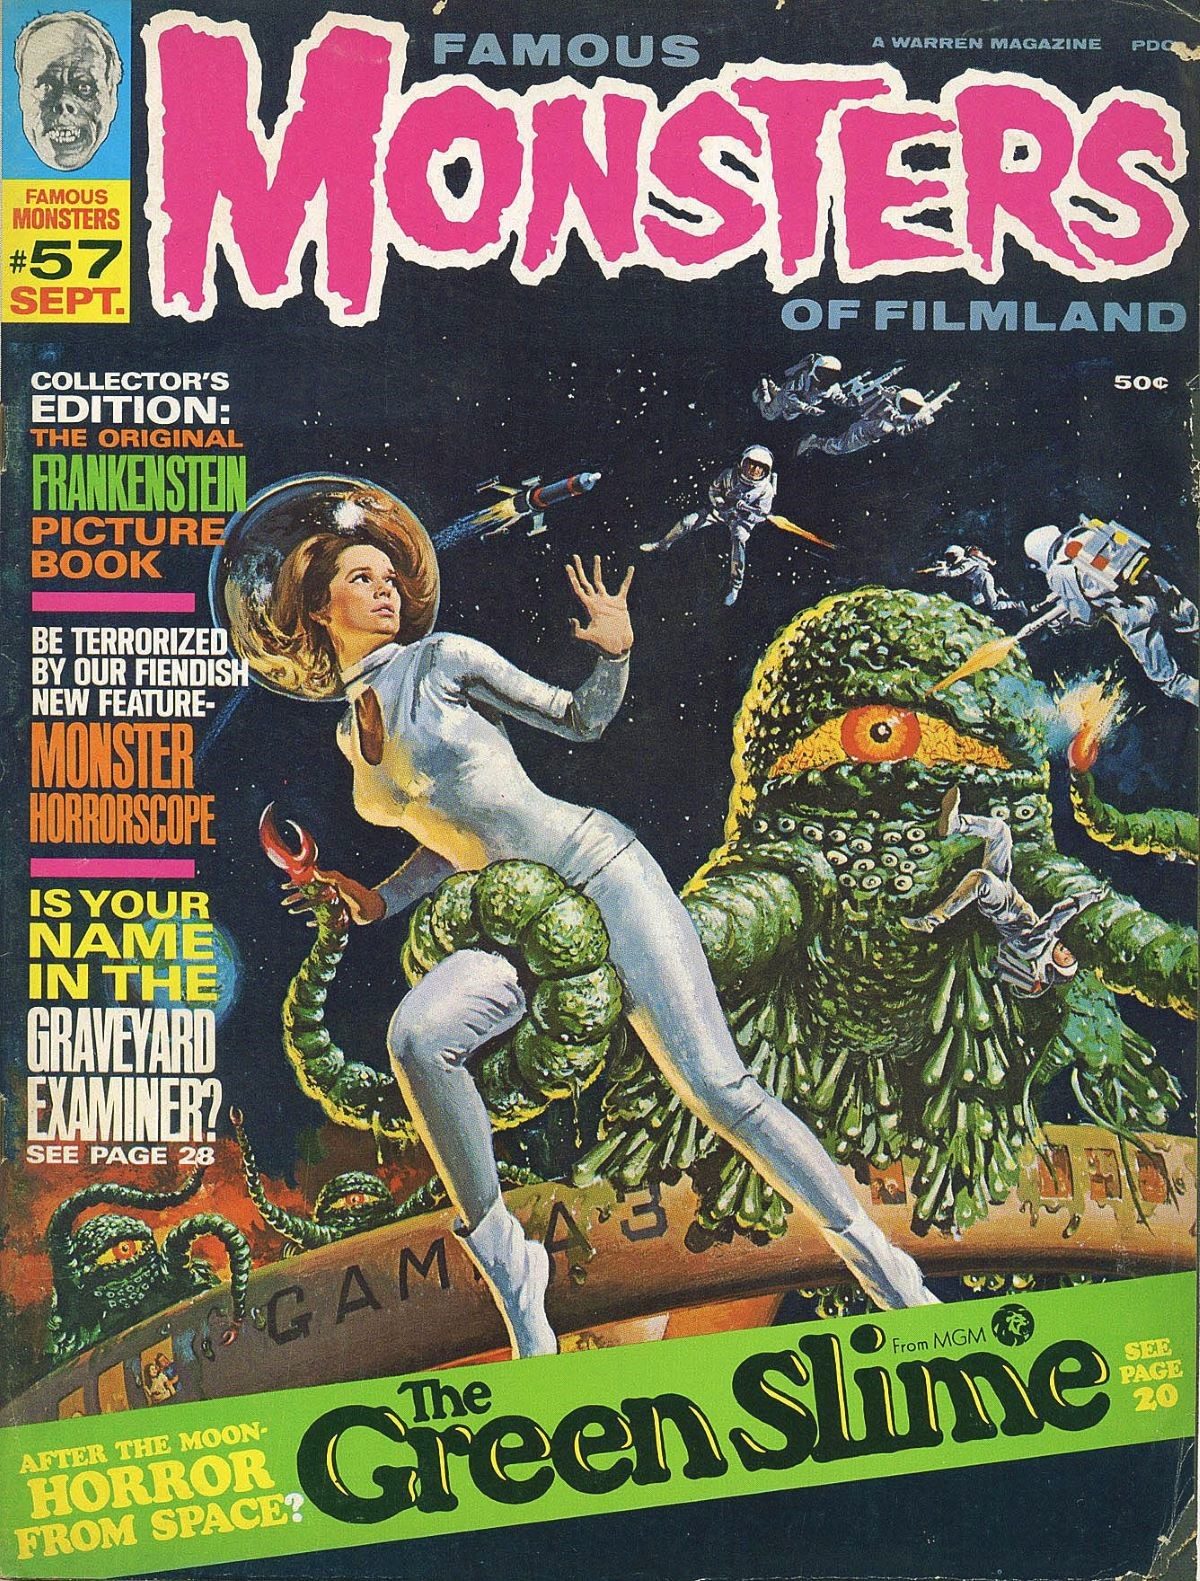 Famous Monsters of Filmland, magazine, horror films, Green Slime, 1960s